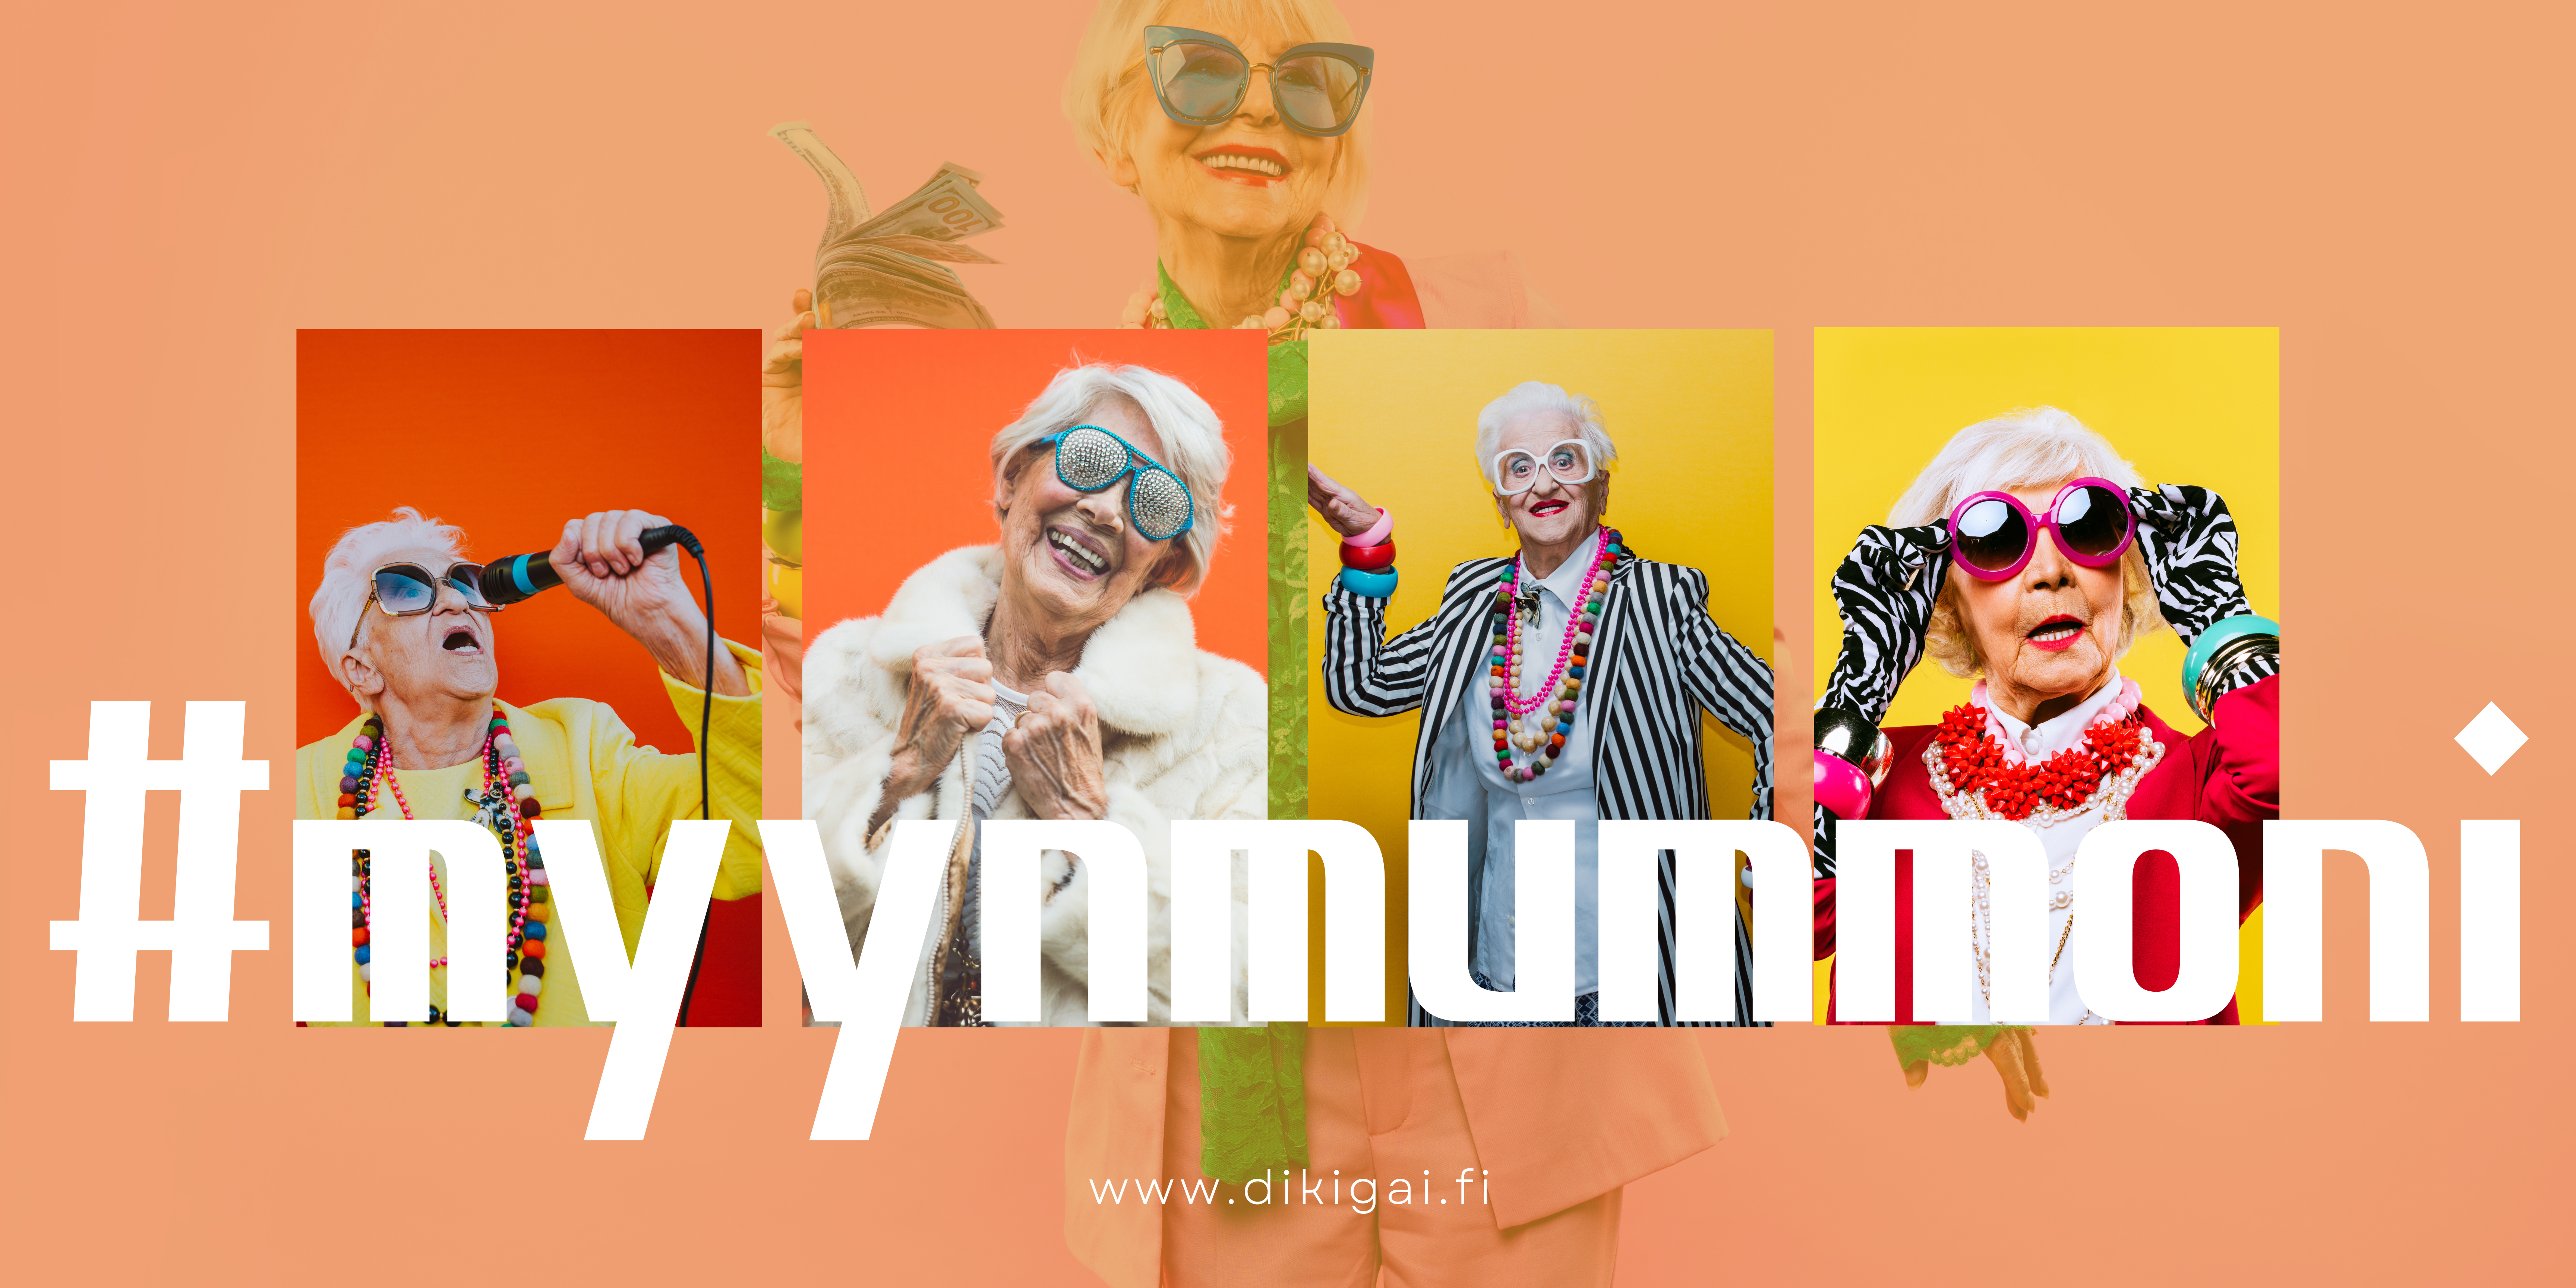 Myyn mummoni blogin kansikuva, jossa useita iloisiaja värikkäitä vanhempia rouvashenkilöitä.